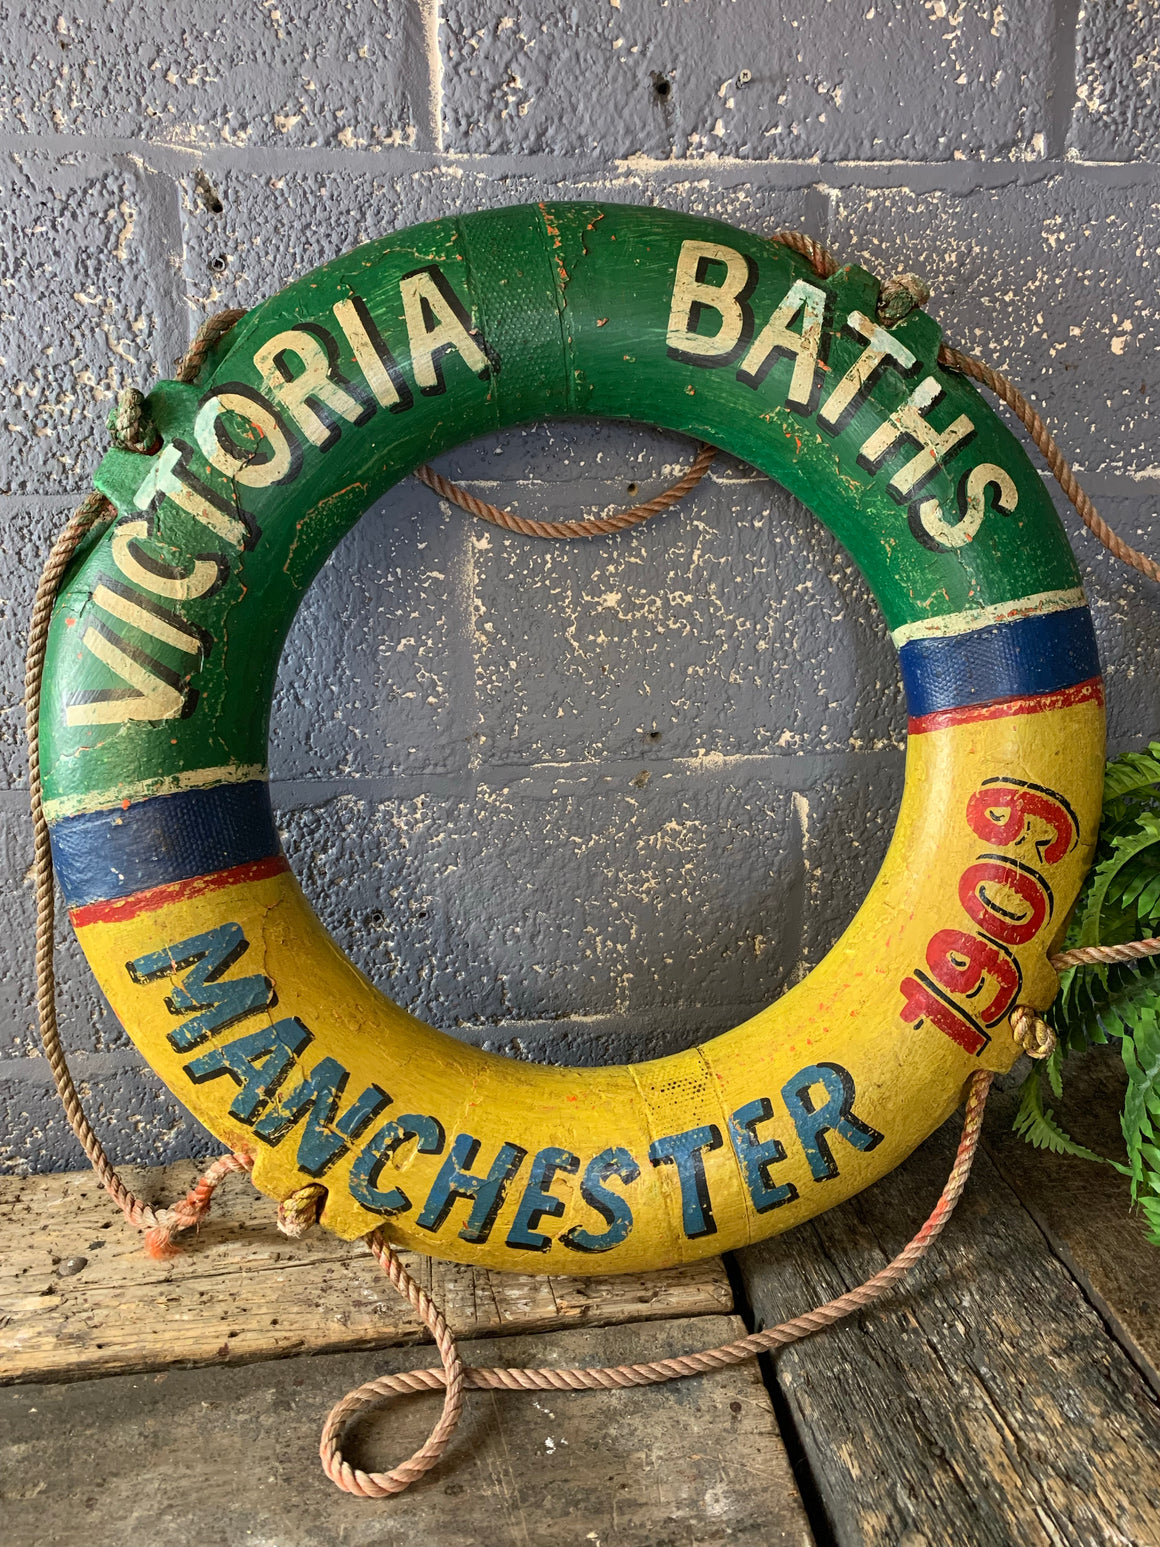 A Victoria Baths life ring